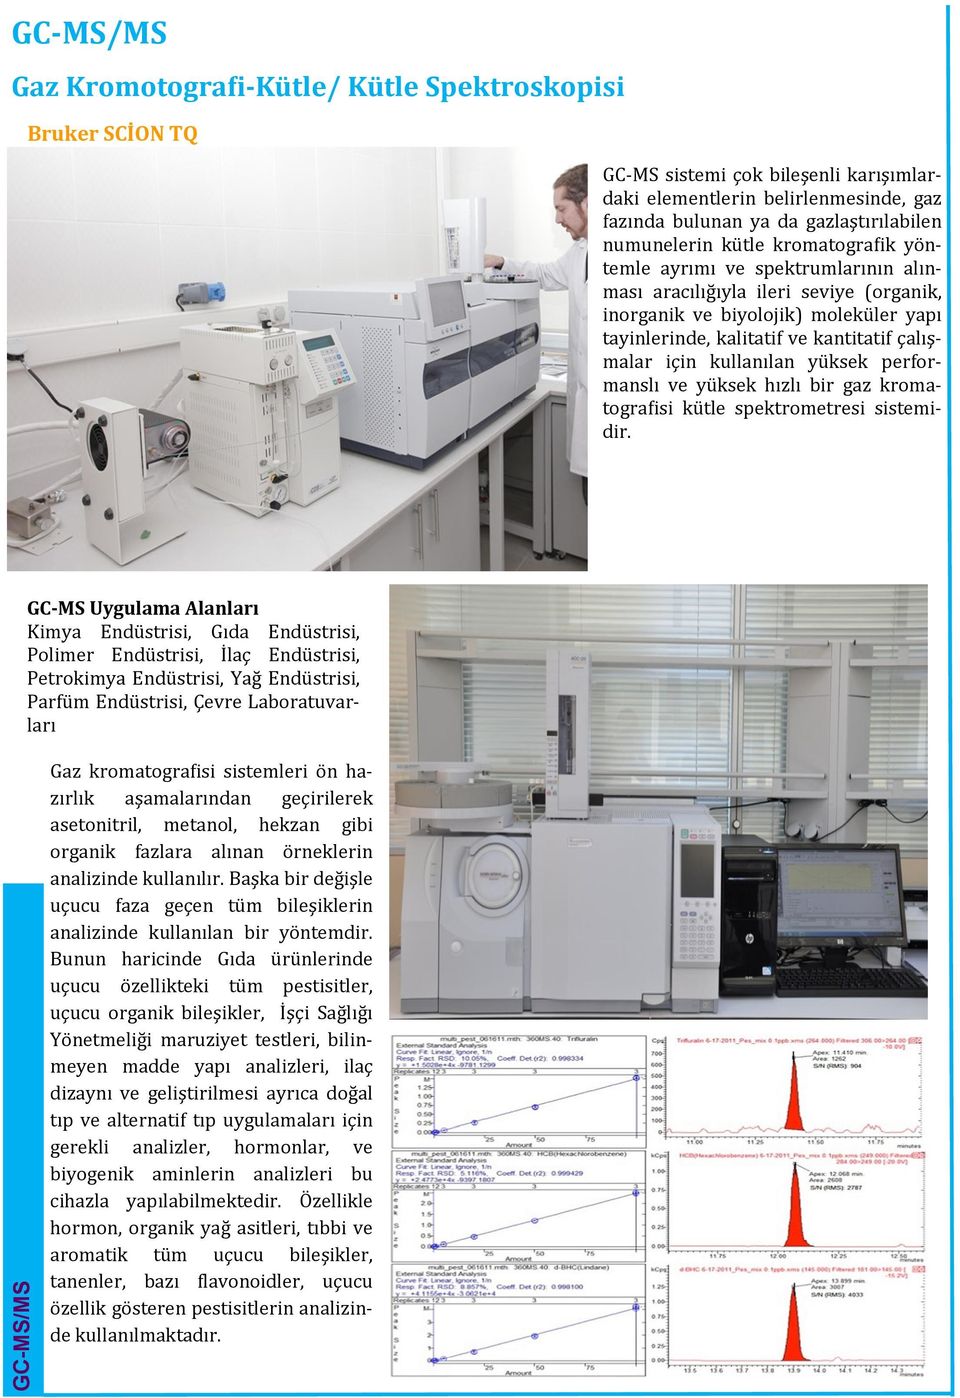 çalışmalar için kullanılan yu ksek performanslı ve yu ksek hızlı bir gaz kromatografisi ku tle spektrometresi sistemidir.